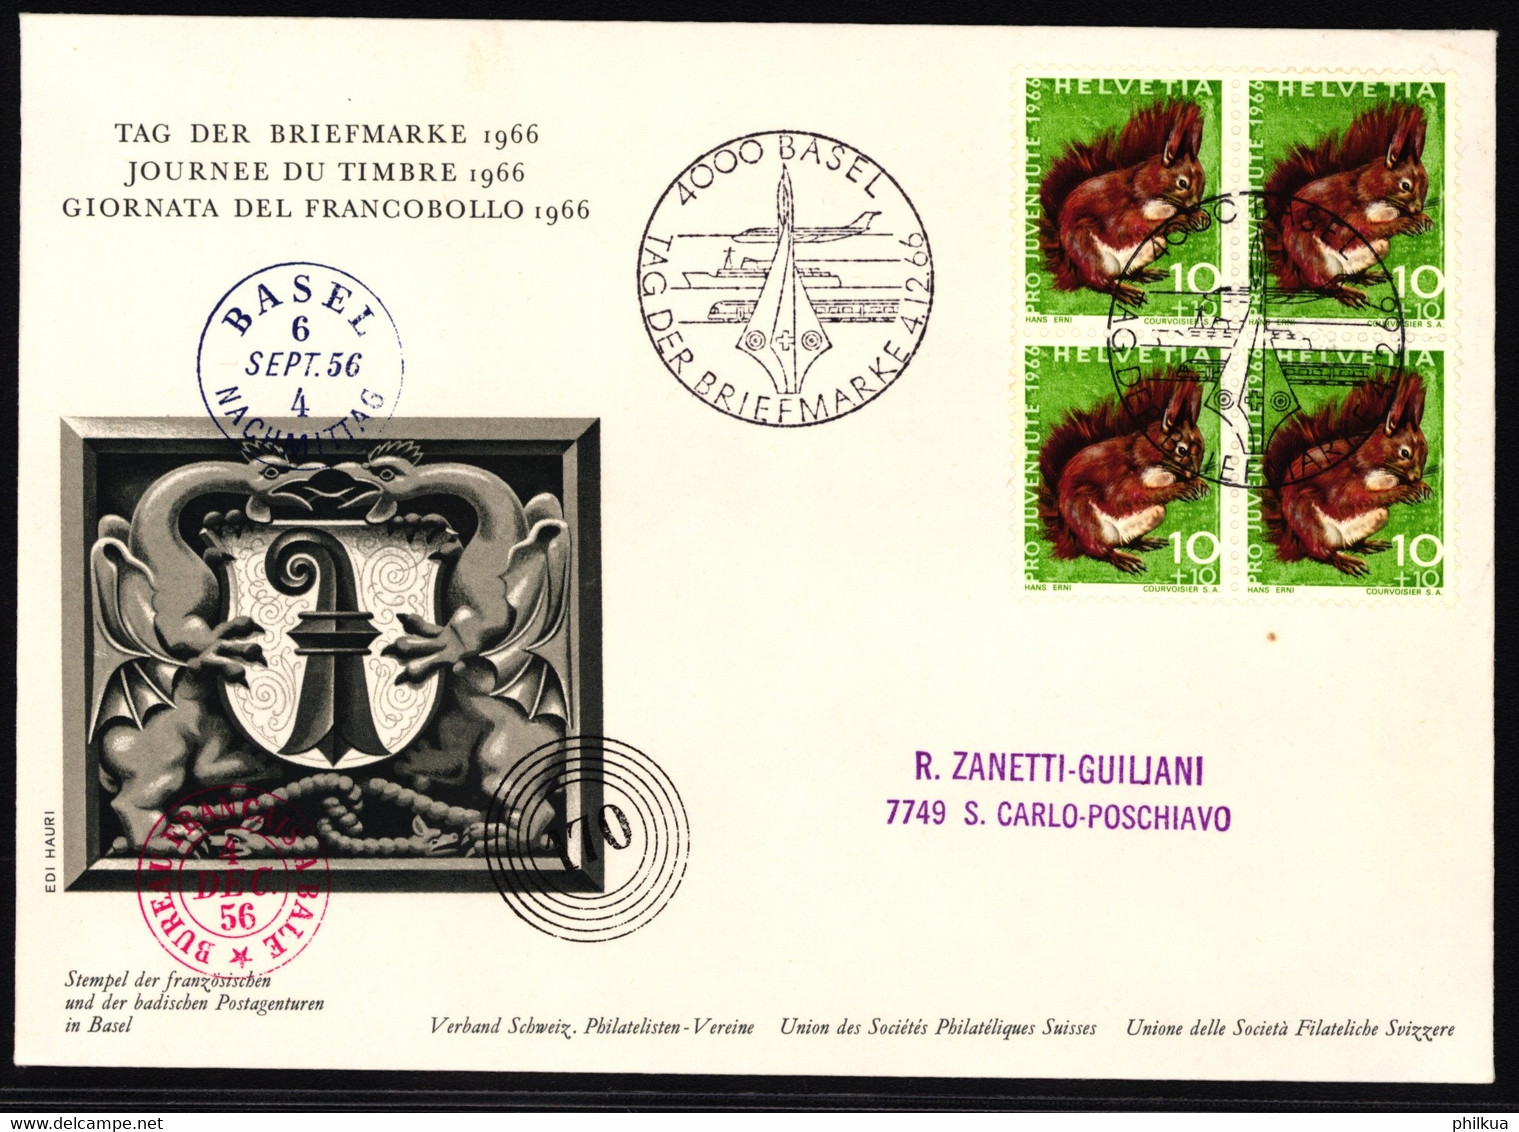 J216 Eichhörnchen Auf Ofiziellem Sonderumschalg "Tag Der Briefmarke" Mit Stempel Tag Der Briefmarke 1966 - BASEL - Giornata Del Francobollo